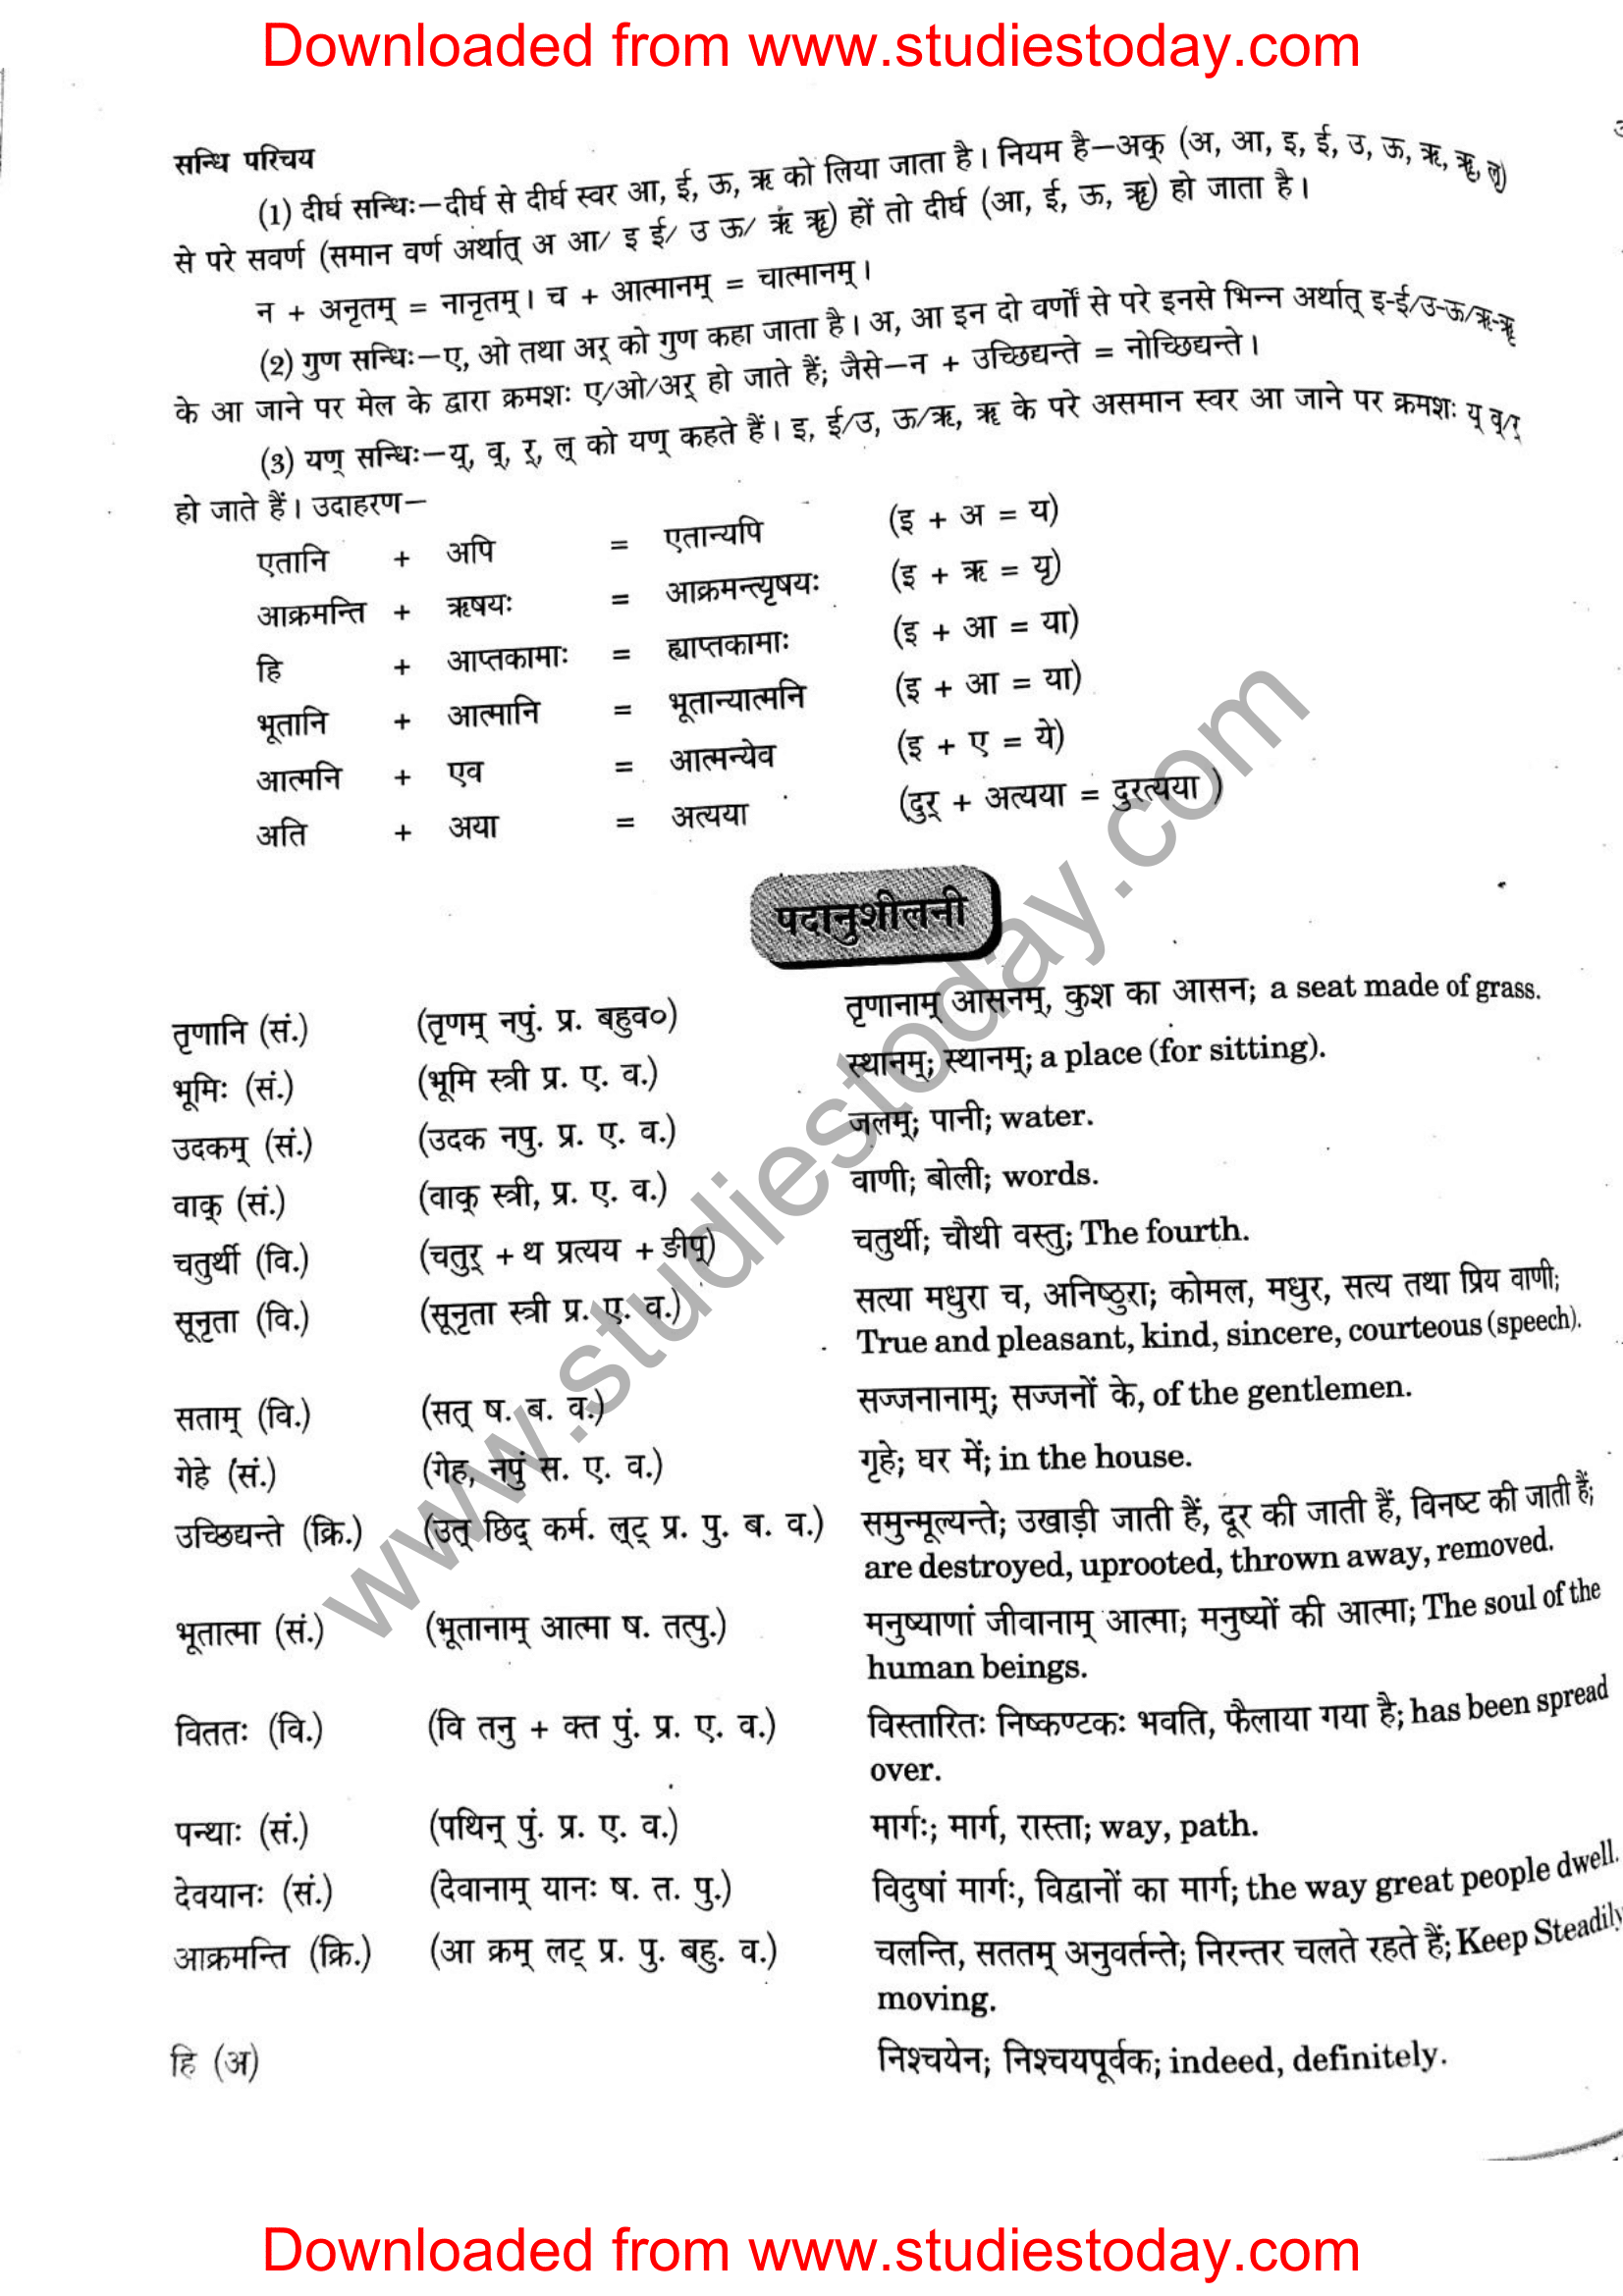 ncert-solutions-class-12-sanskrit-ritikia-chapter-1-12